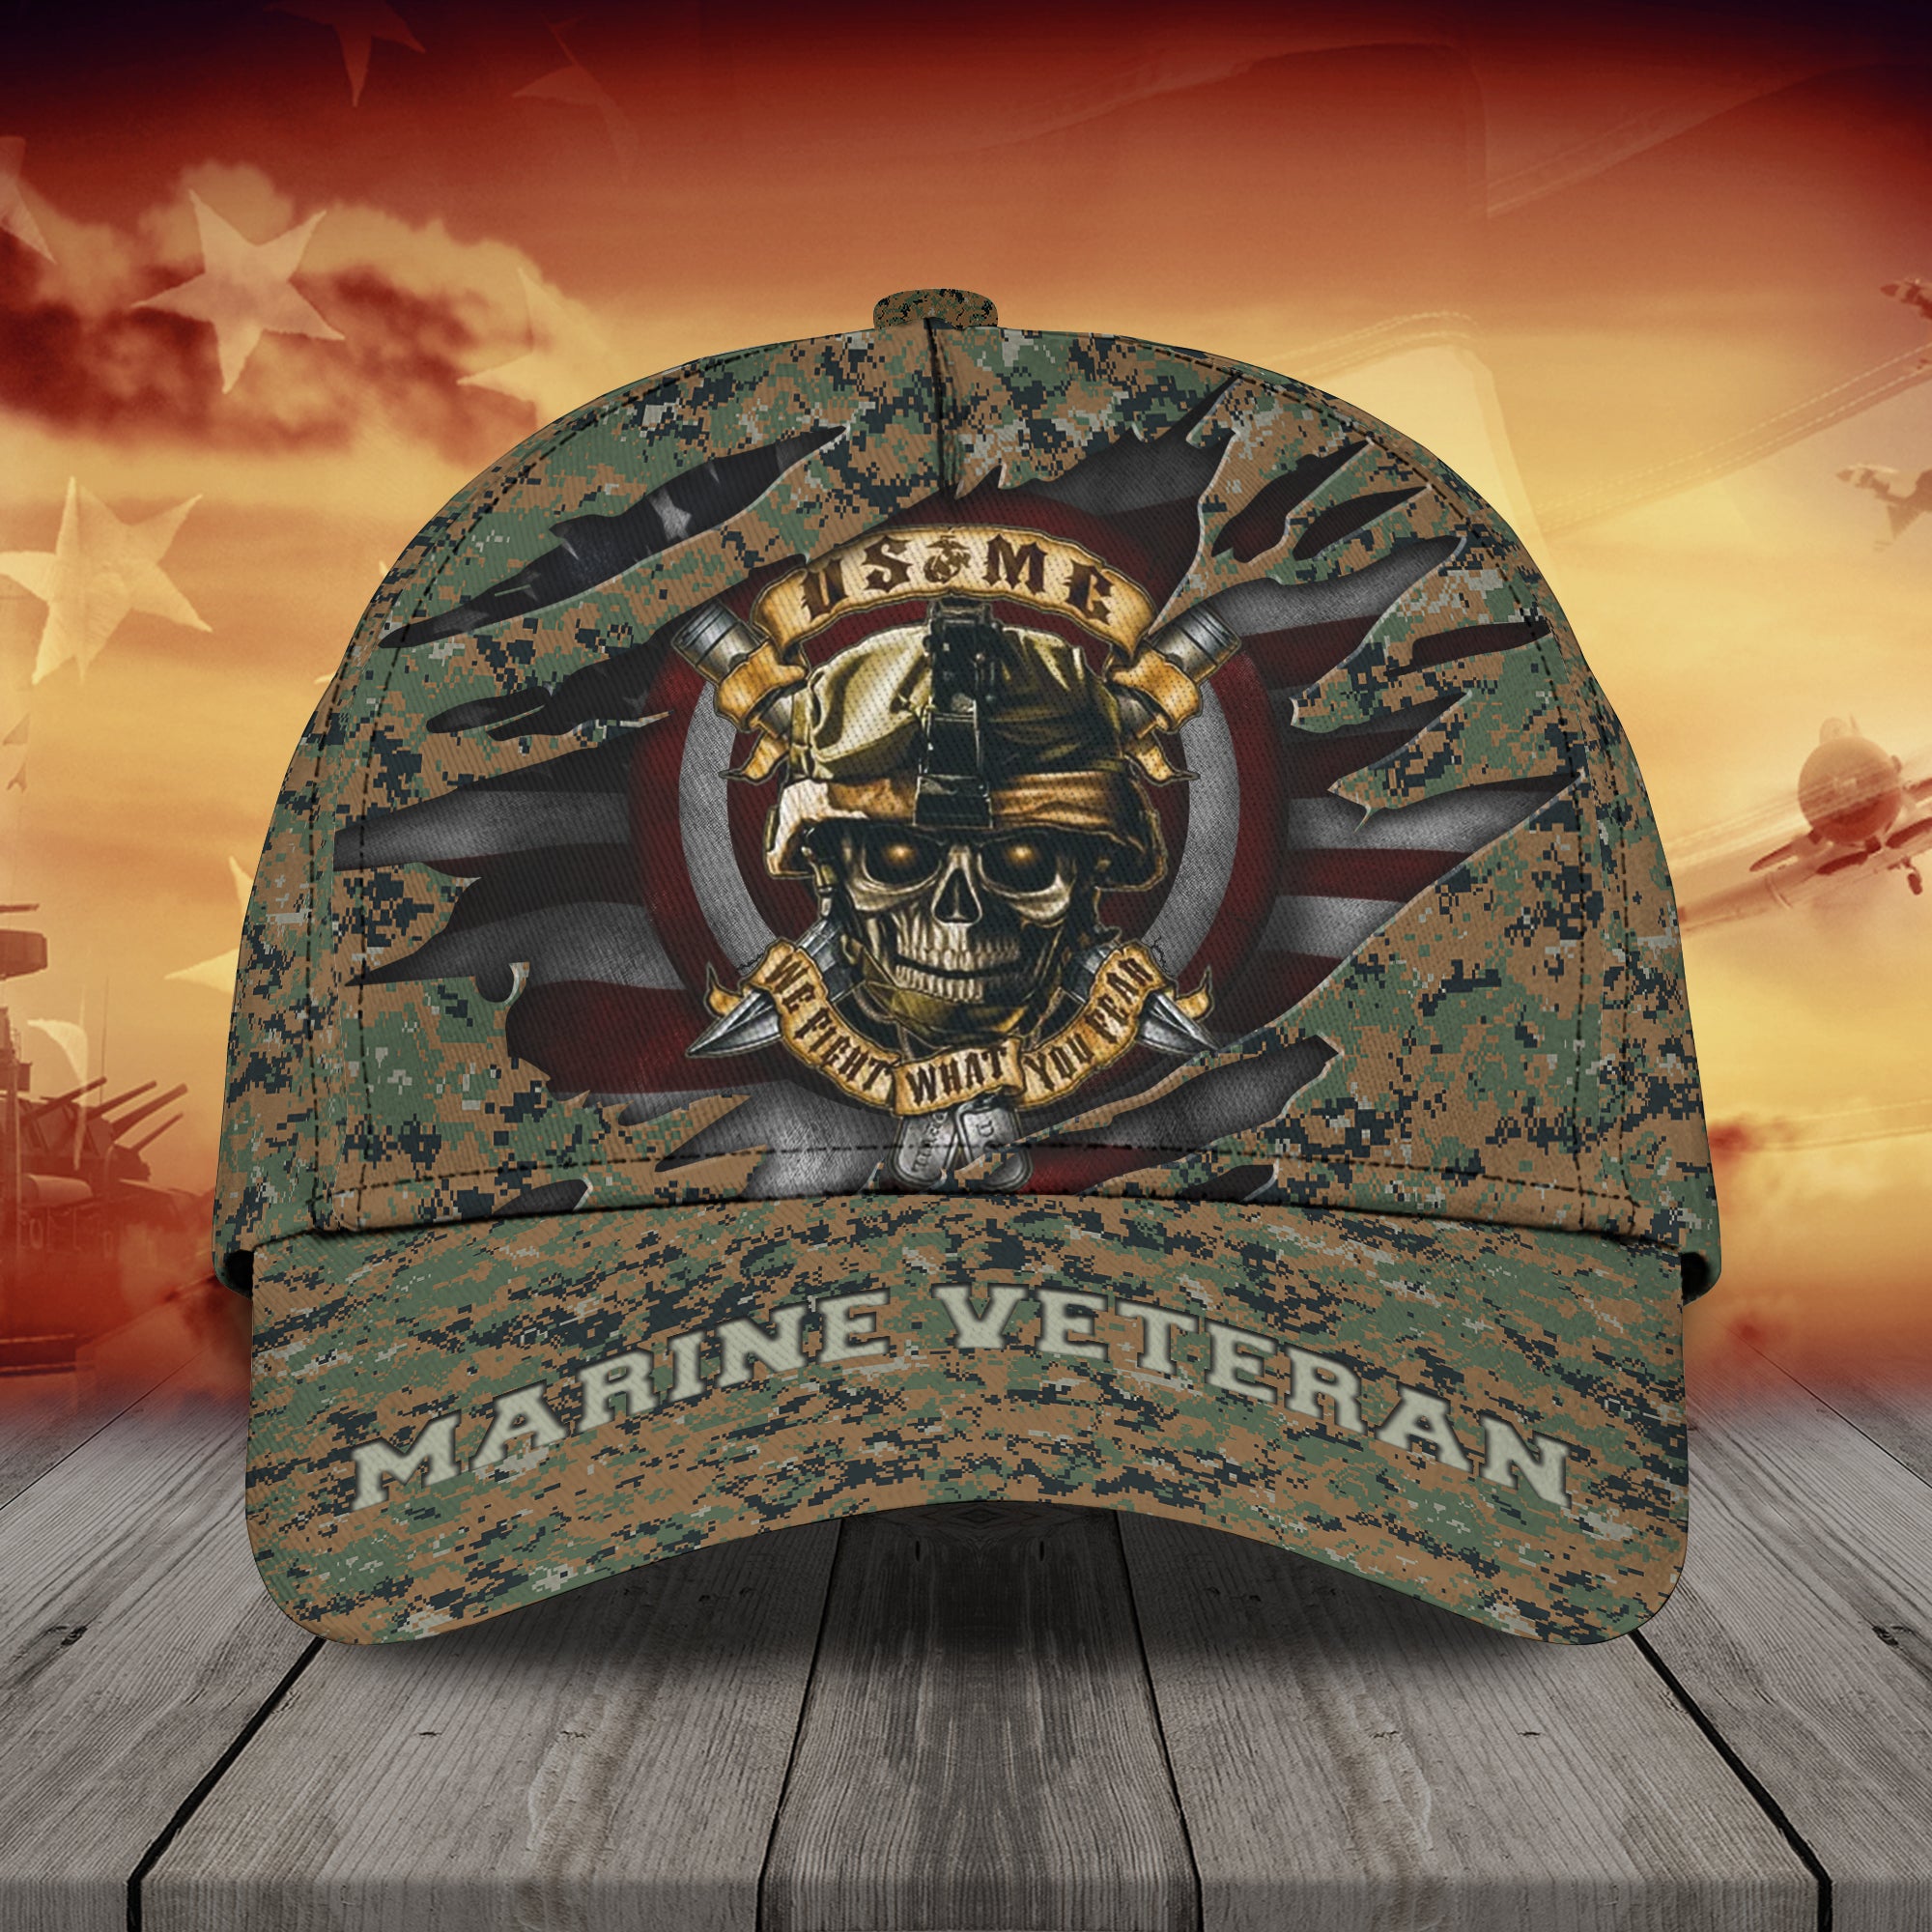 Marine veteran - Personalized Name Cap - Lst149